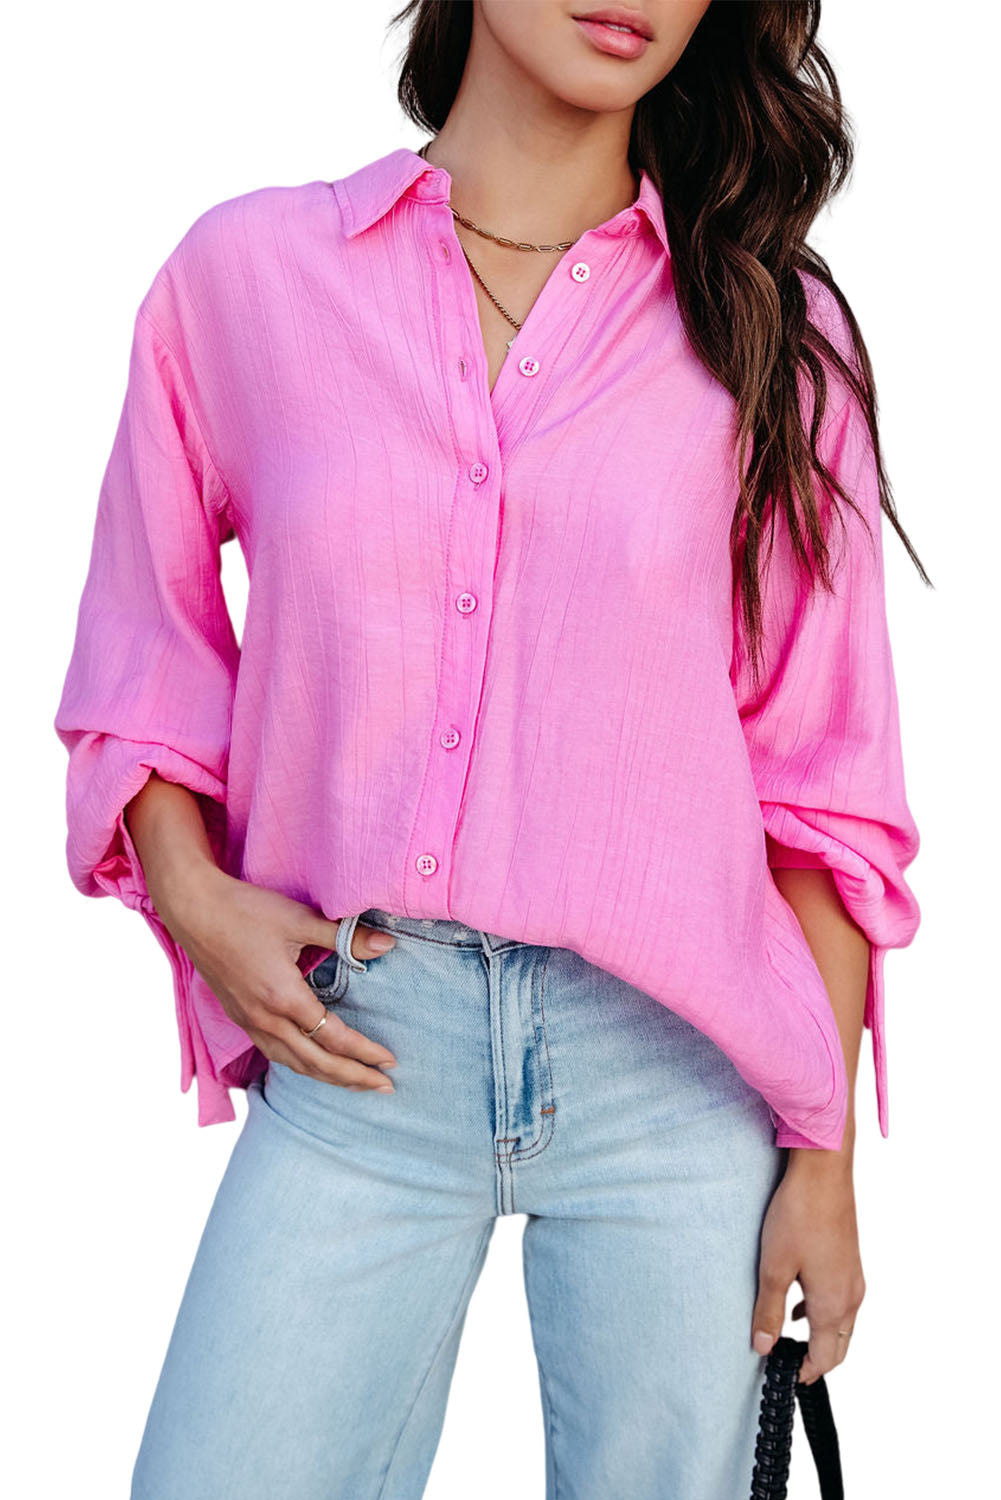 Rožnata srajca z dolgimi rokavi z razcepom na hrbtu in z gumbi